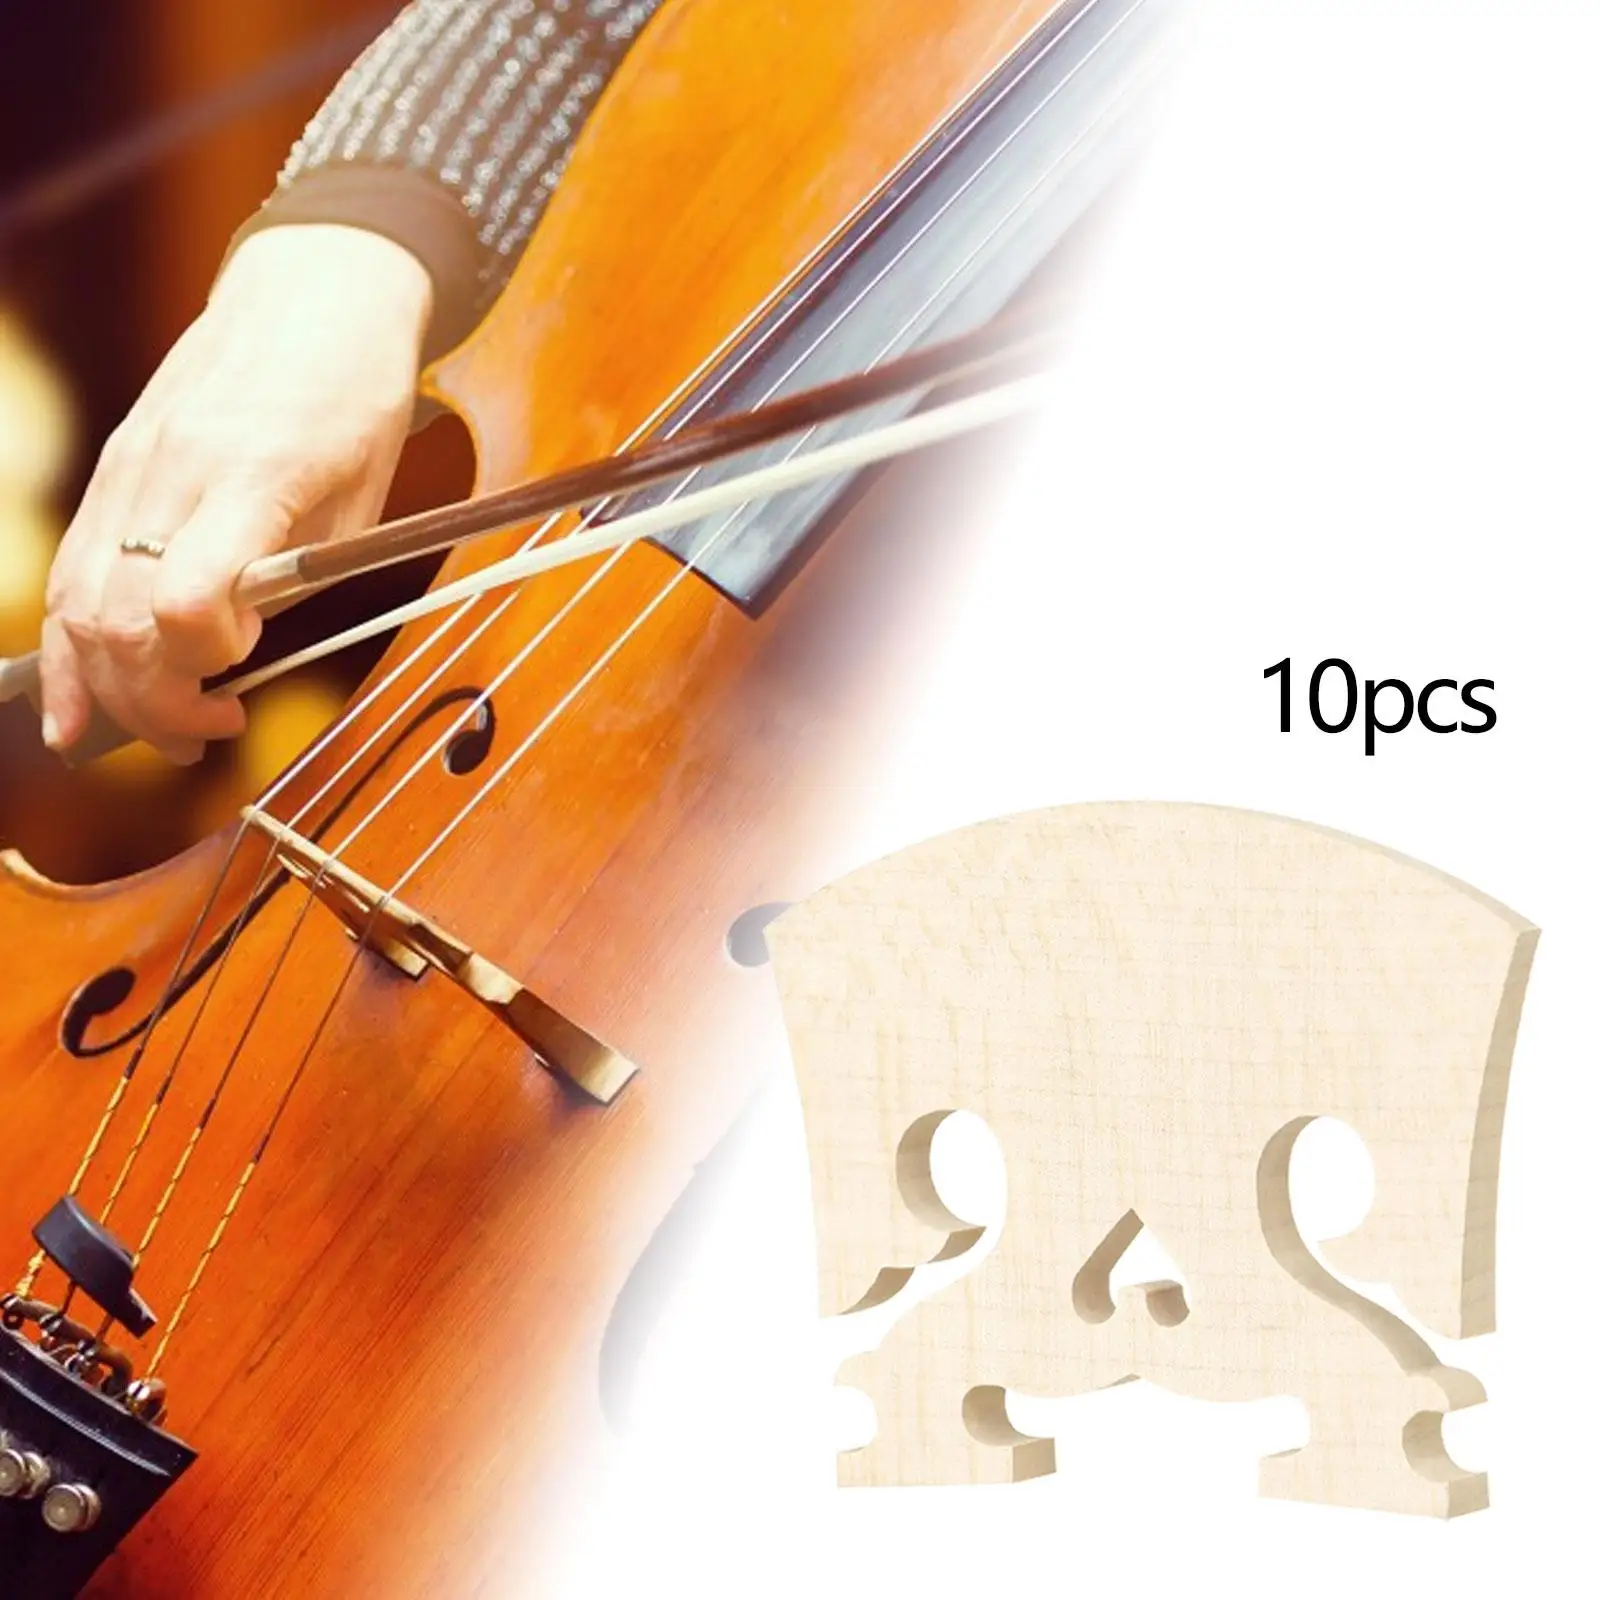 10 Штук деревянных скрипичных мостов в натуральную величину 4/4, облегченные запасные части для скрипки Изображение 2